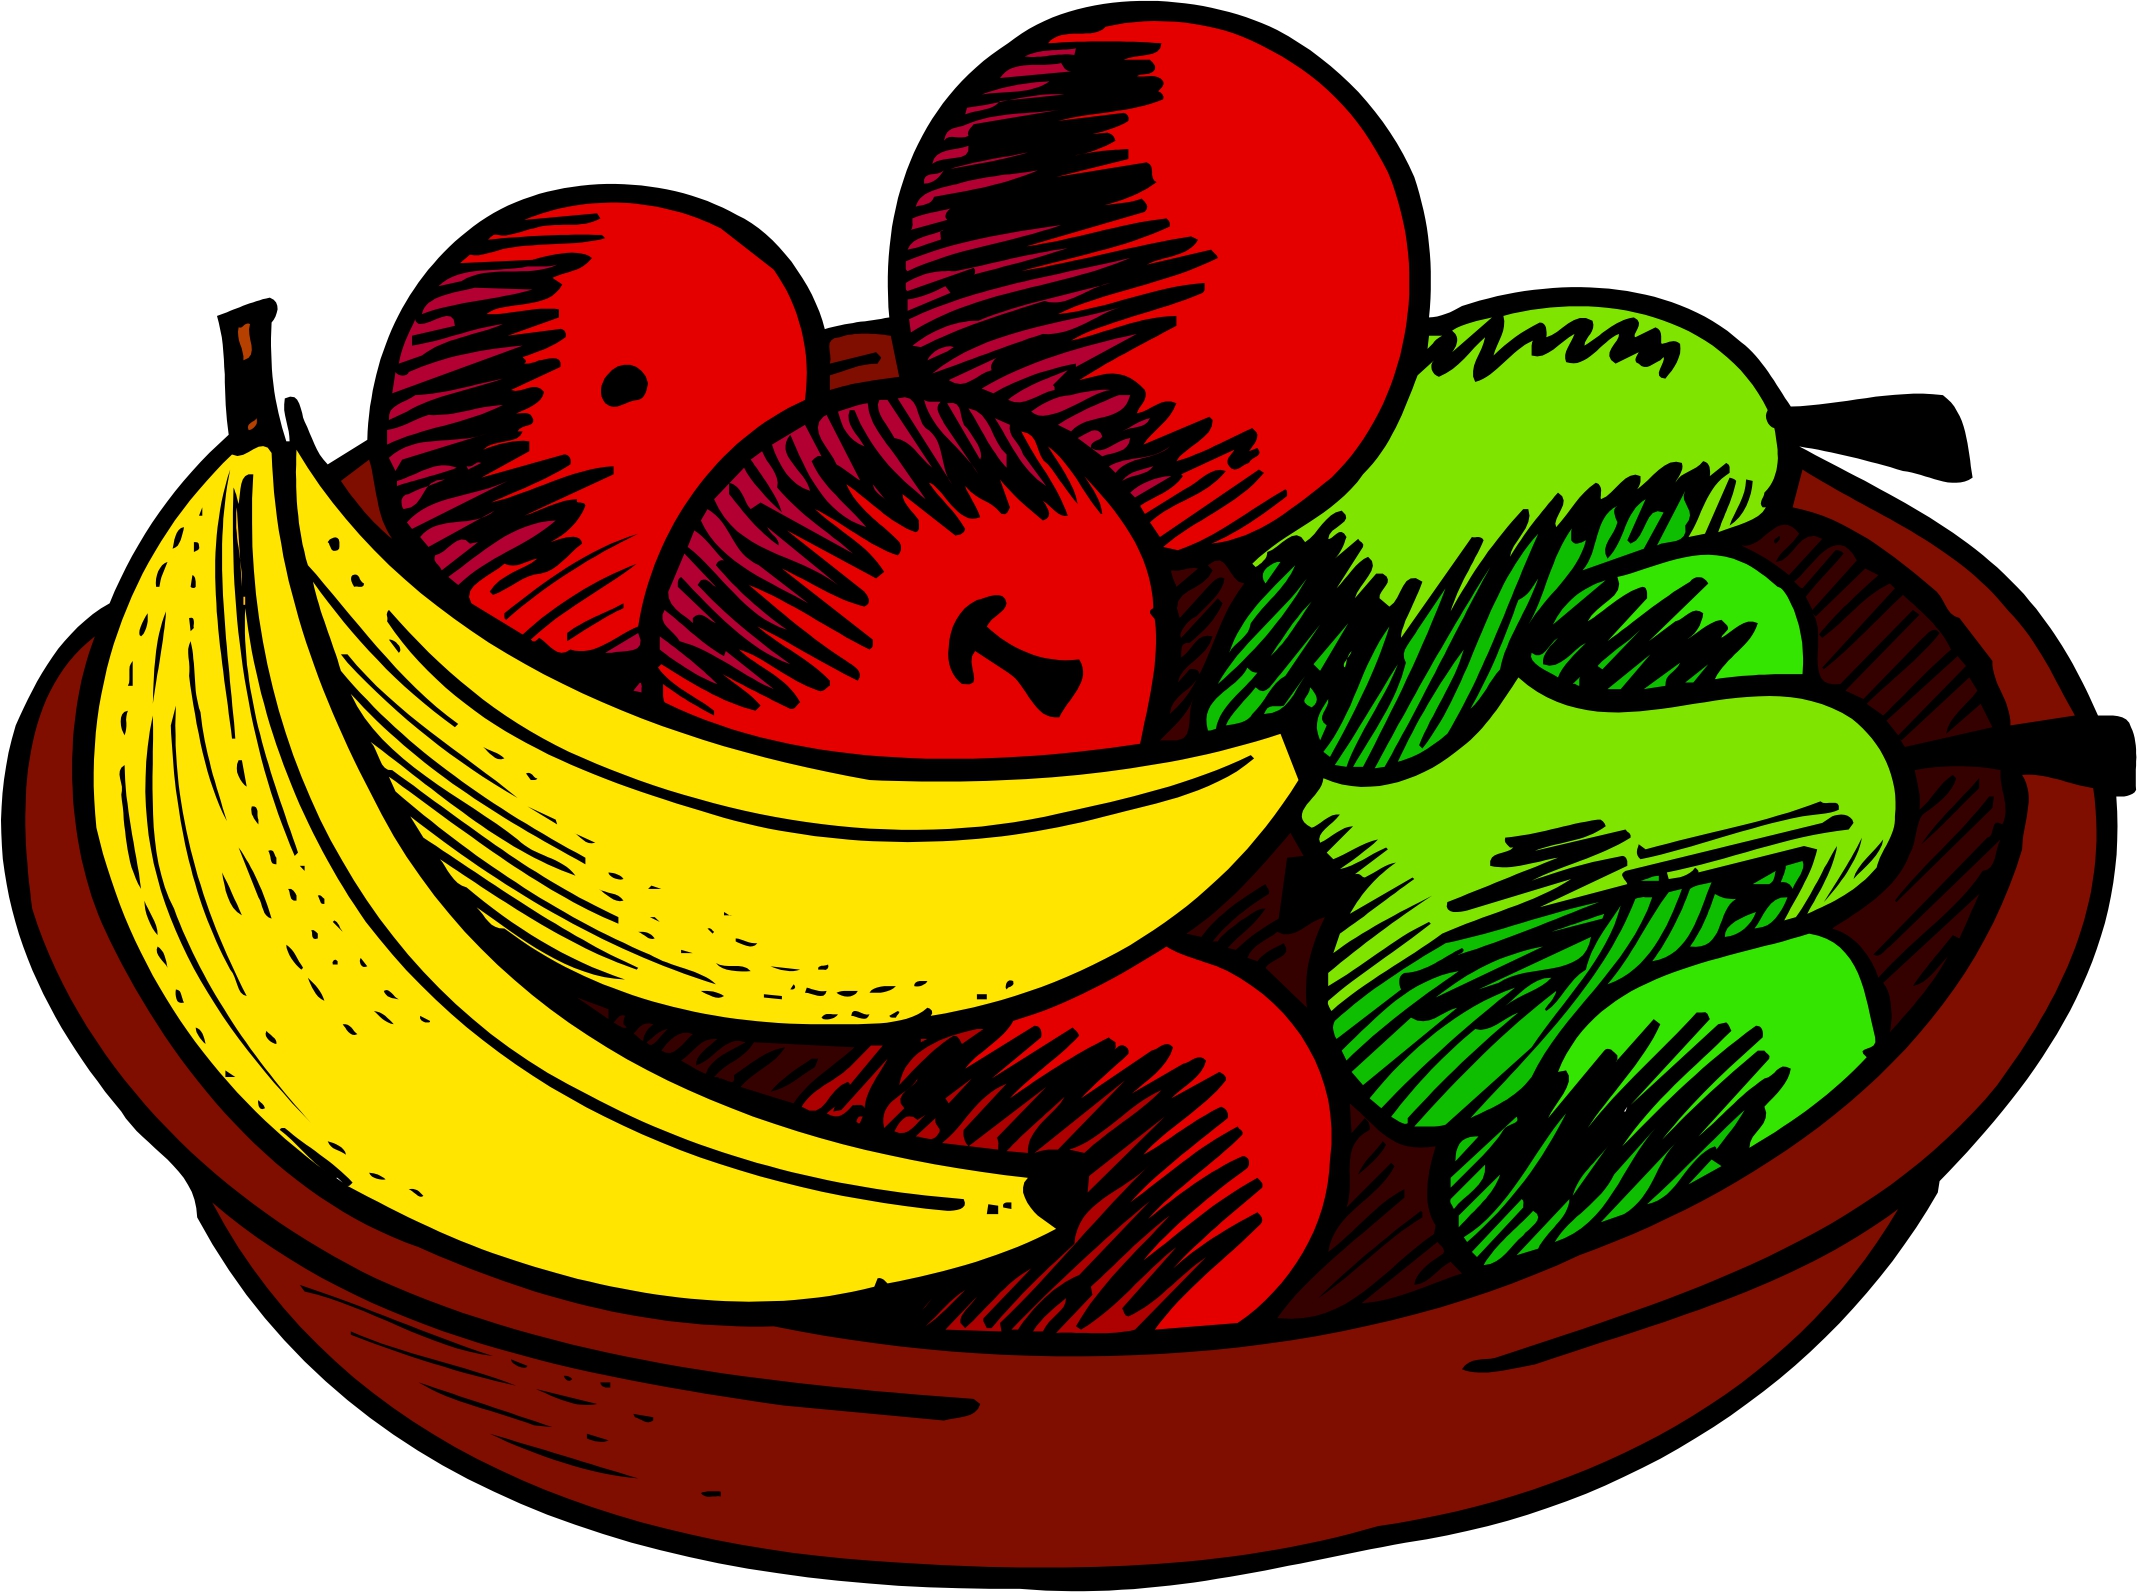 Fruit Bowl Clip Art Images .